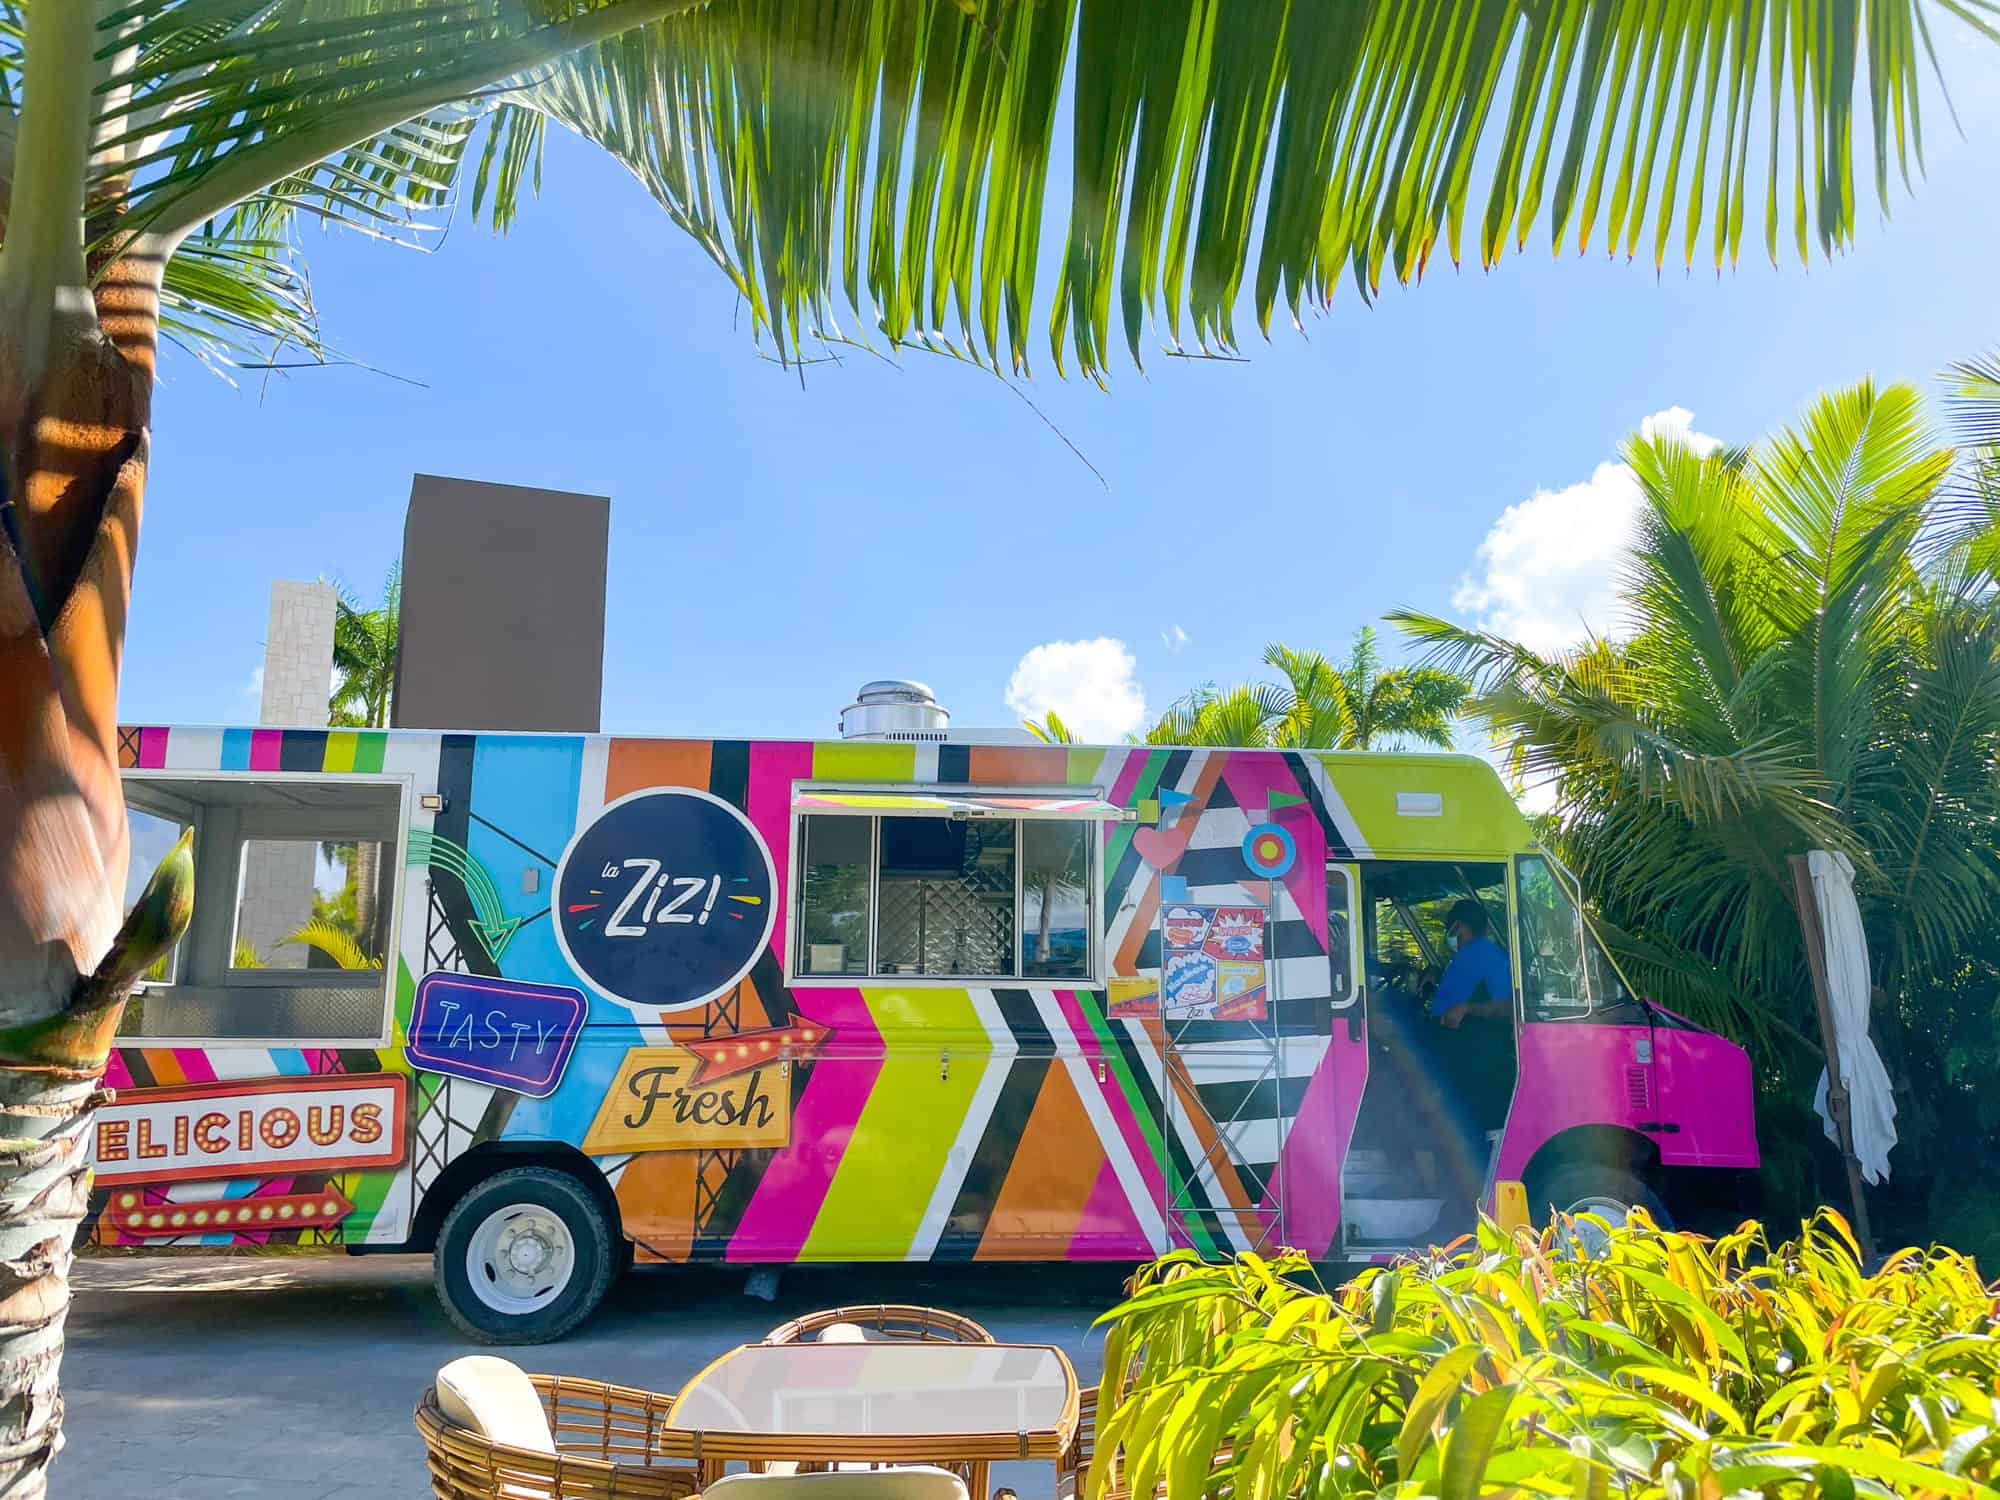 Dominican Republic - Hyatt Ziva street food van in waterpark